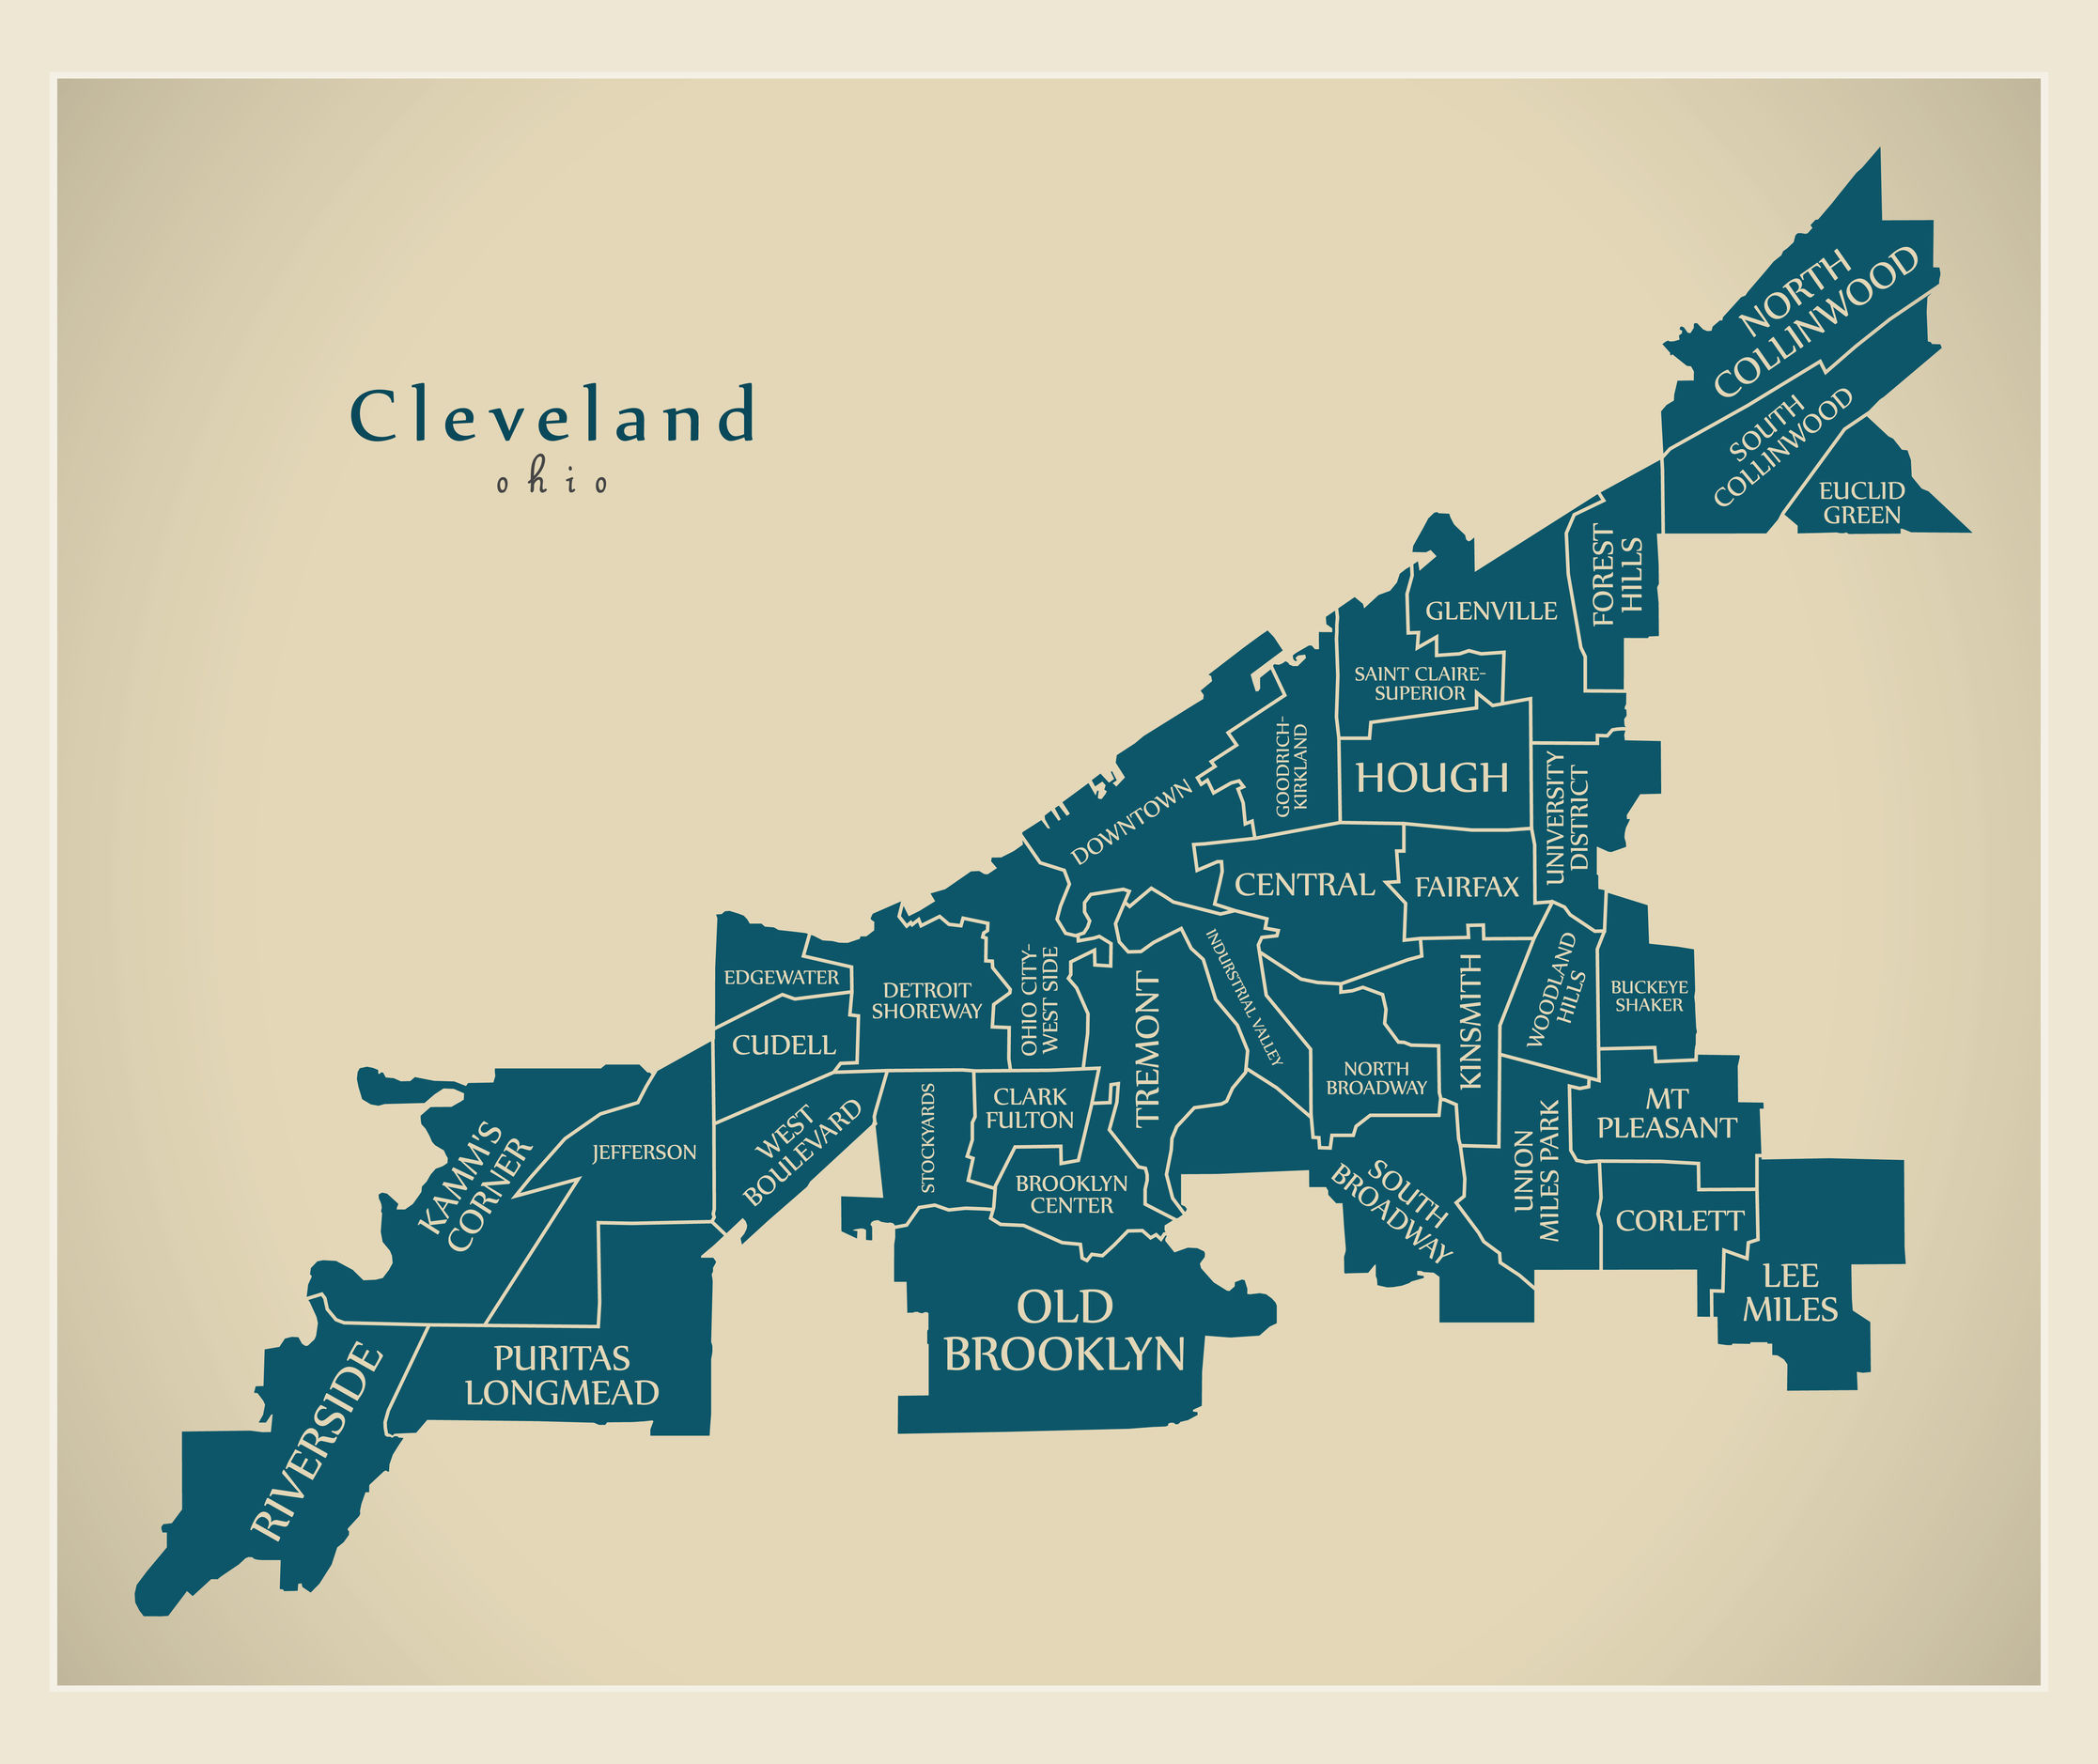 Cleveland Ohio neighborhood map